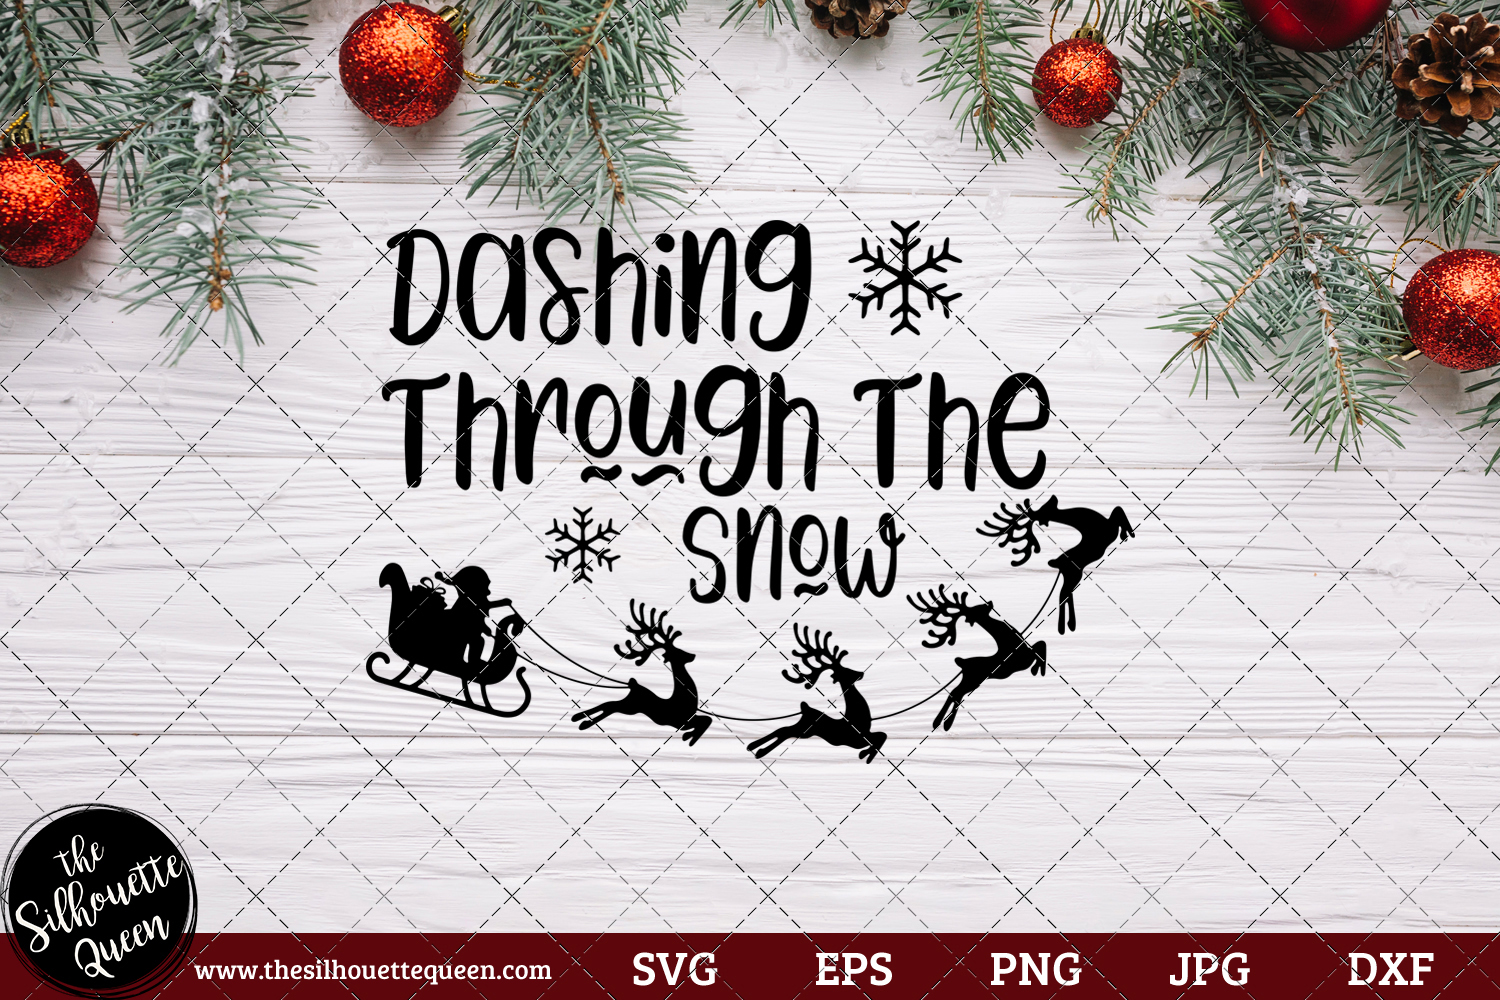 Download Dashing Through The Snow Saying SVG